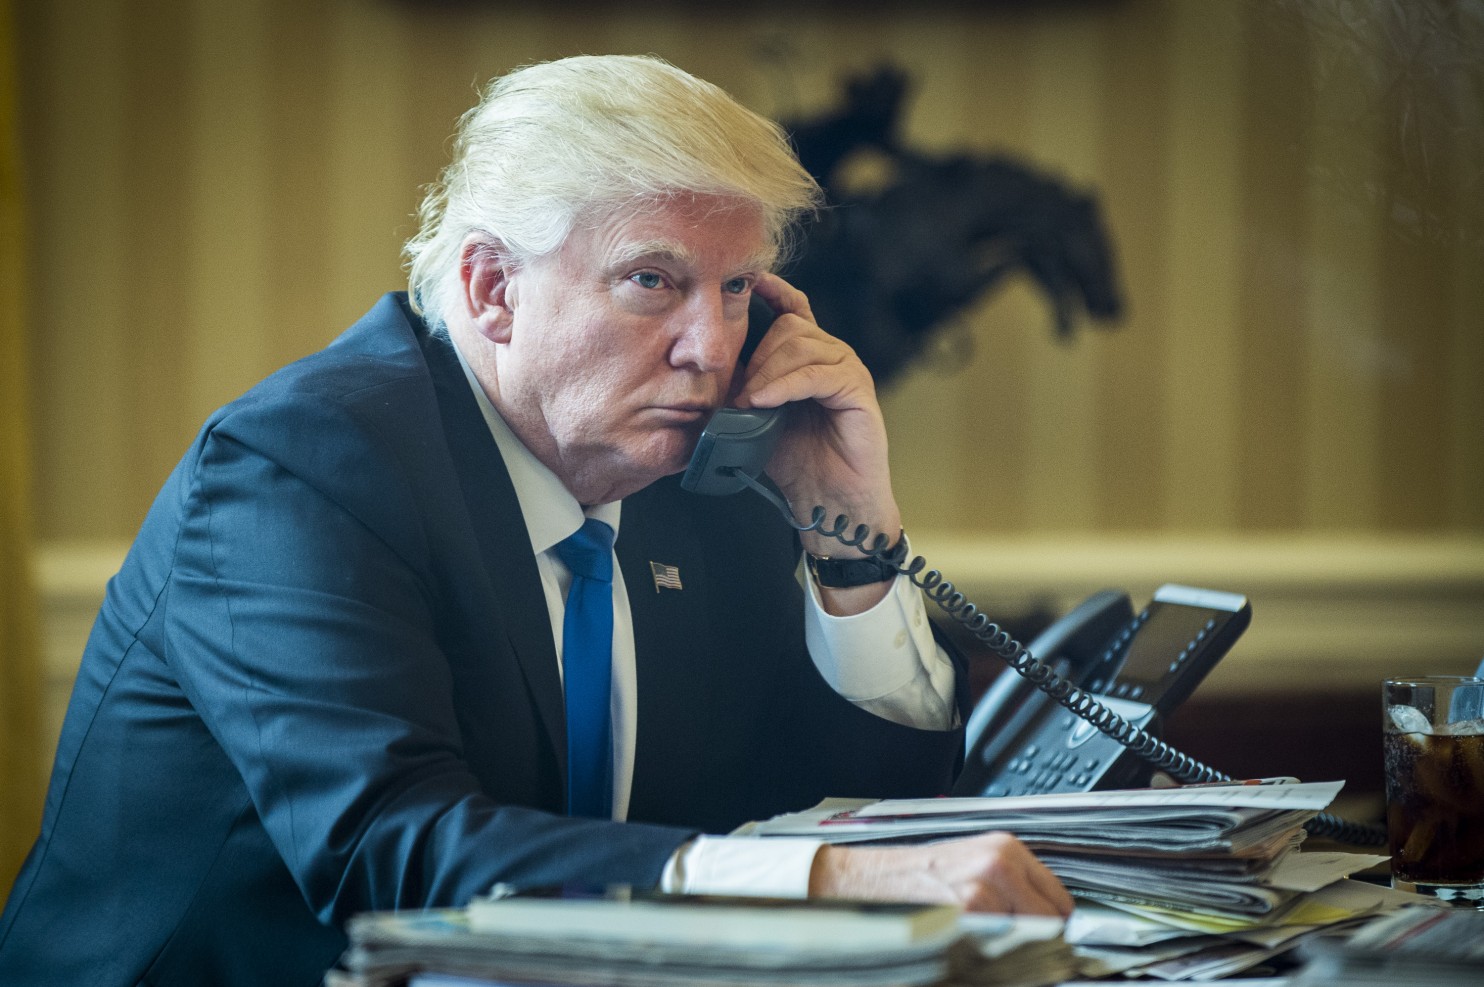 Ông Trump nói chuyện với Tổng thống Nga Vladimir Putin qua điện thoại ngày 28-1 - ảnh: Bloomberg